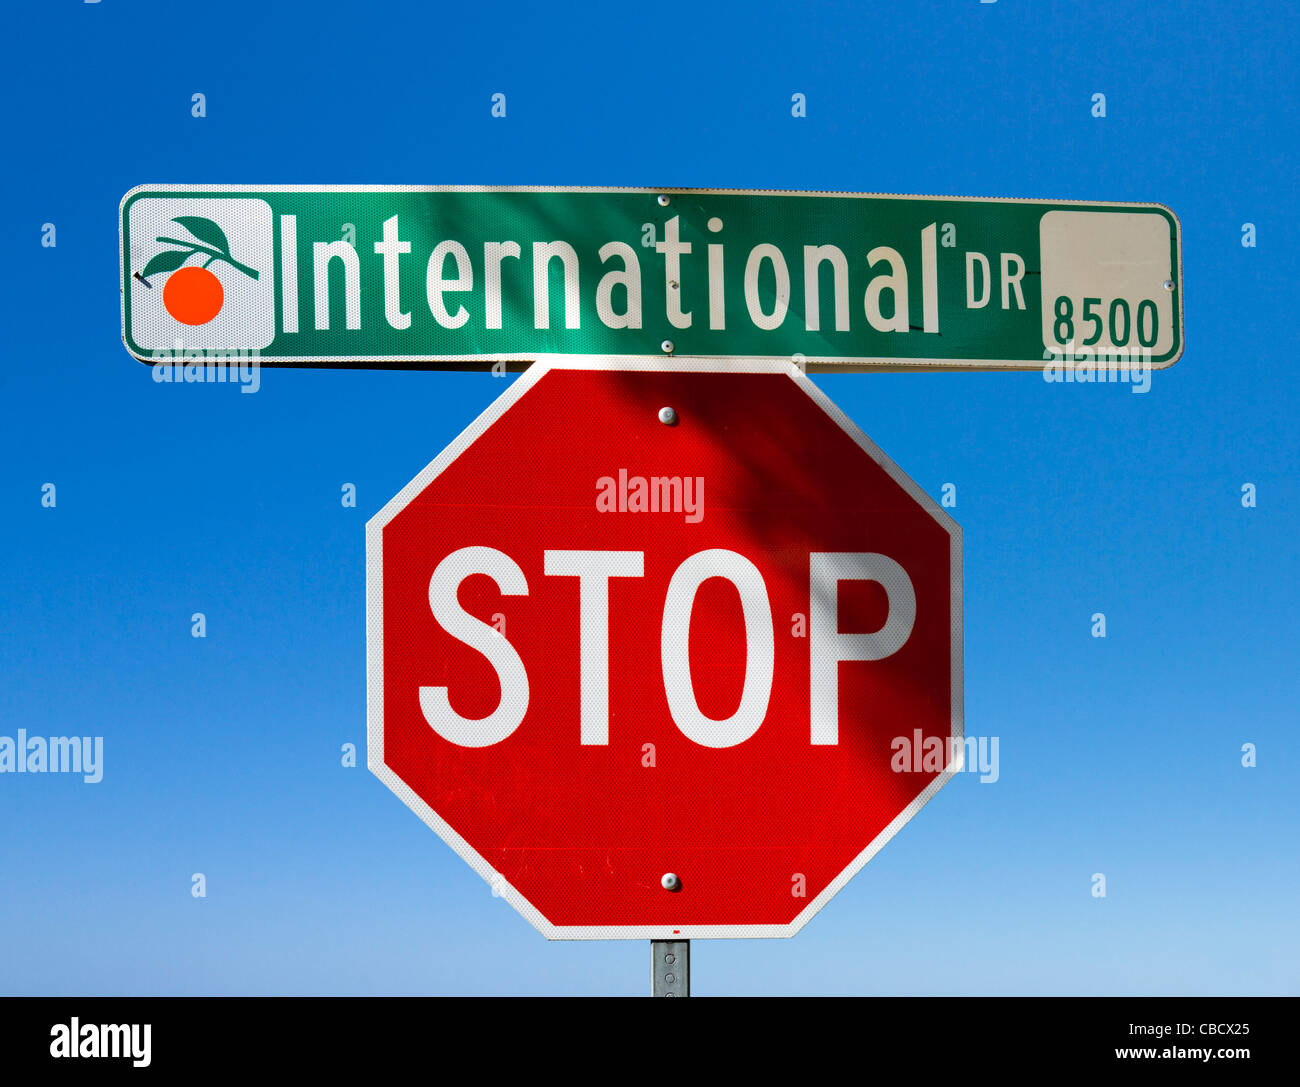 Calle y señales de stop, International Drive, Orlando, Florida, EE.UU. Foto de stock